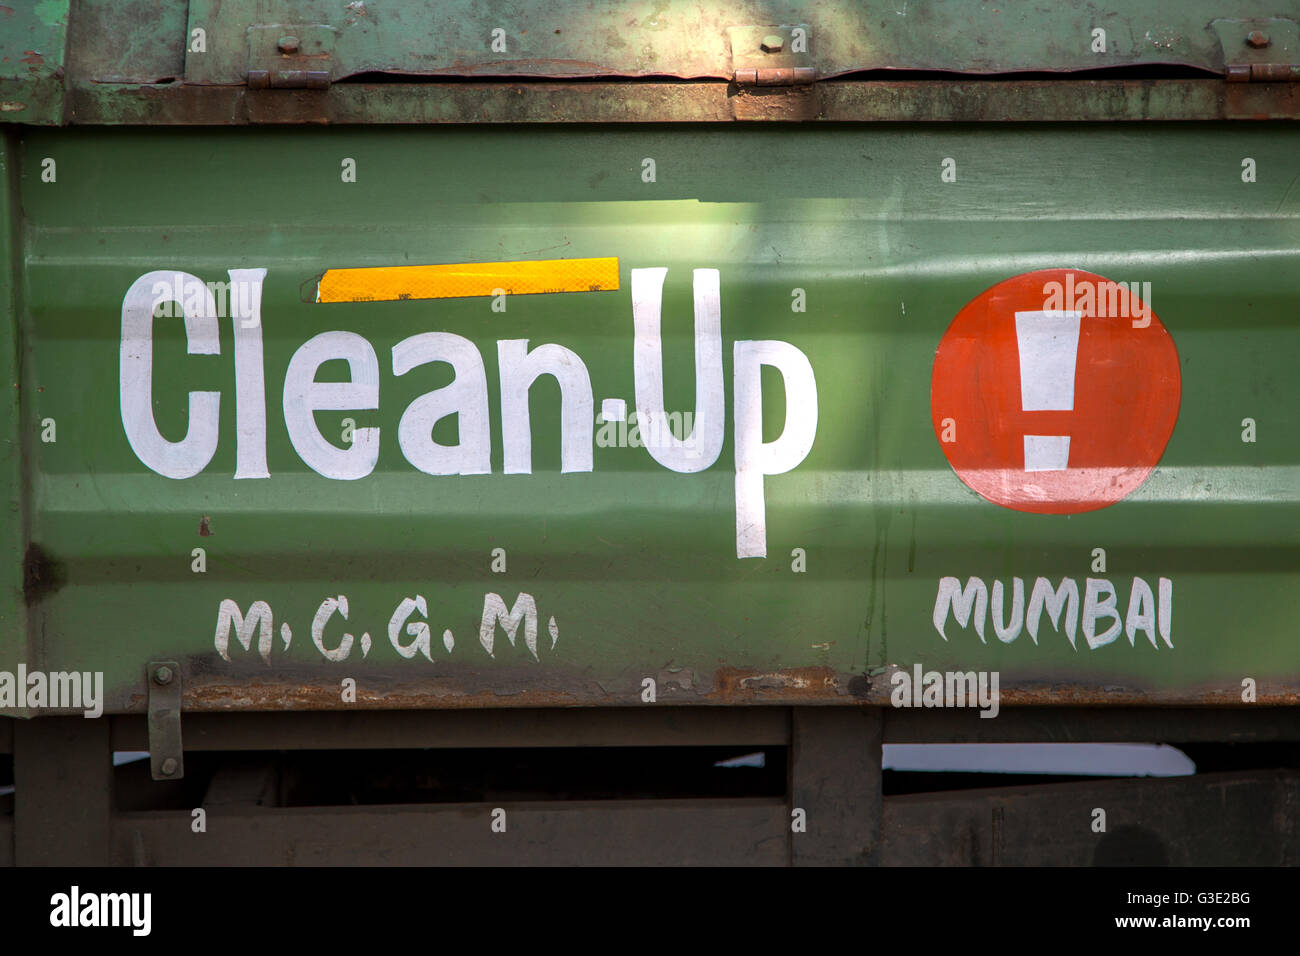 MUMBAI, India - 10 ottobre 2015: clean up segno su un carrello in Mumbai, India. I comuni in India impiegano carrelli per raccogliere i compressori GA Foto Stock